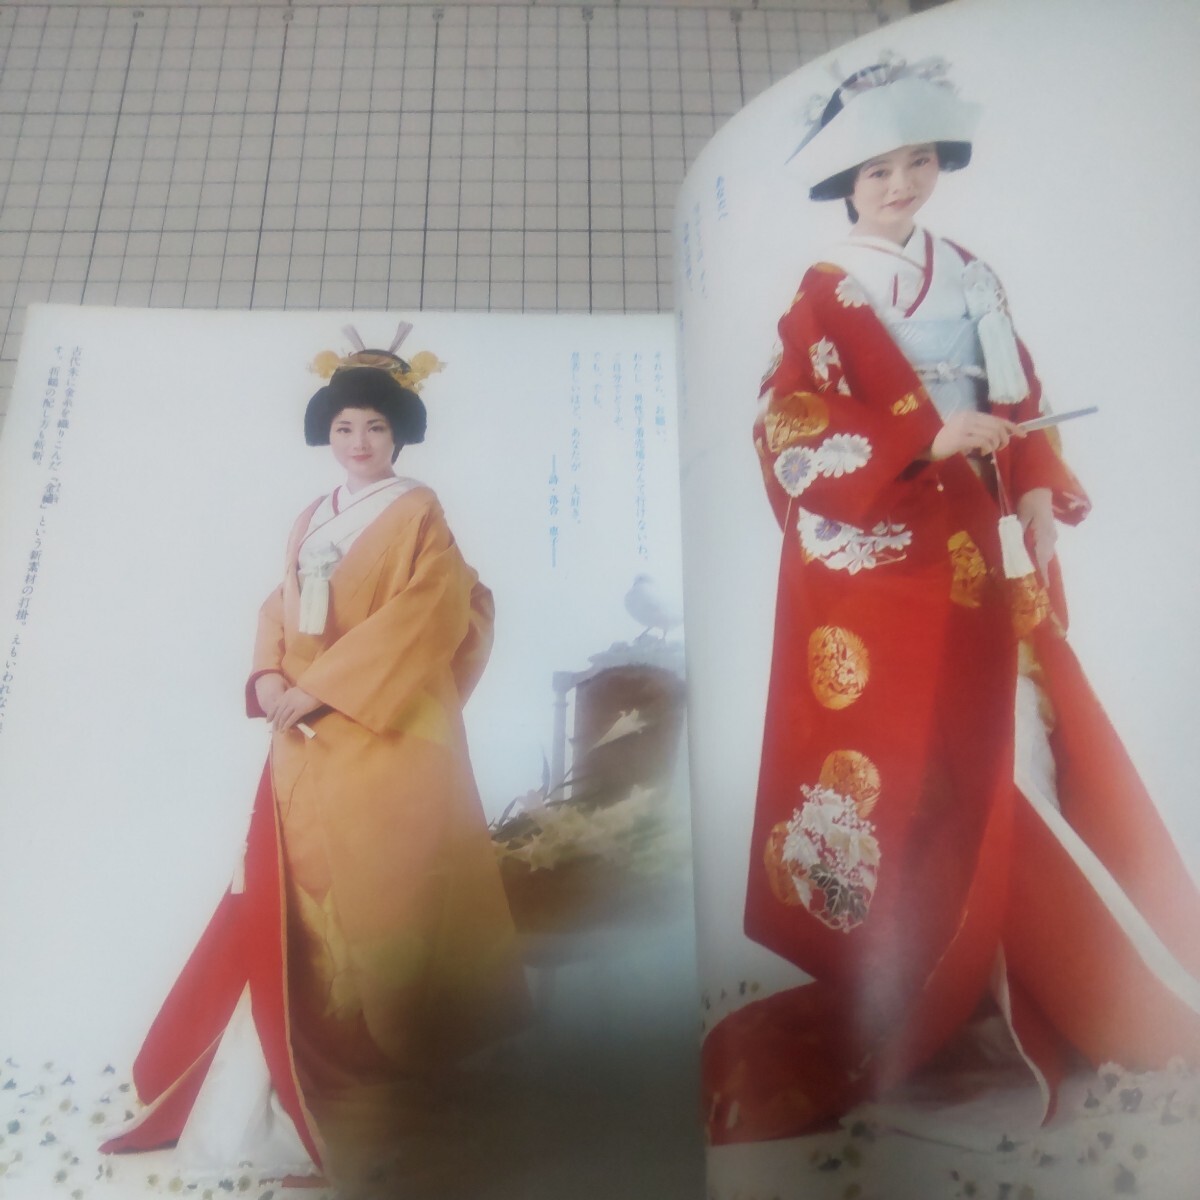 中古古本 増刊女性セブン 婦人雑誌 きもの専科 結婚特集号 1972年 _画像3